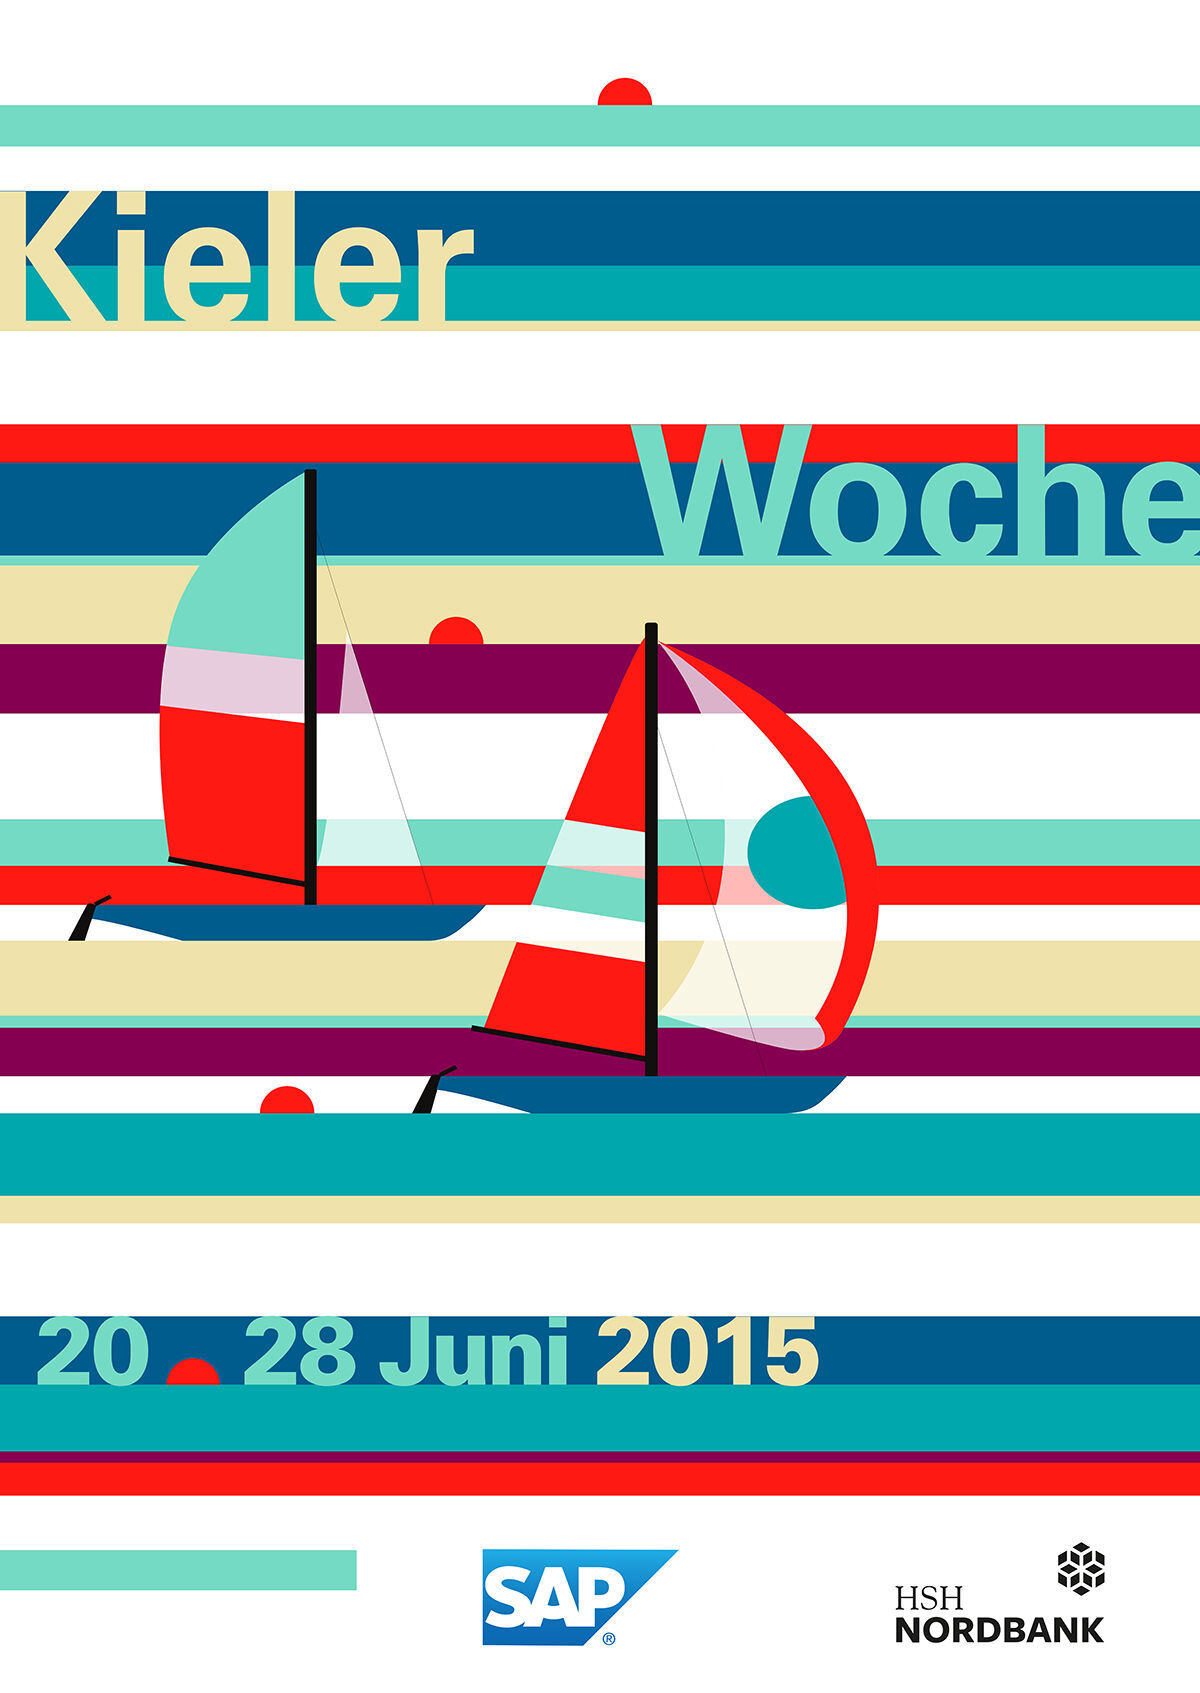 Affiche Kieler Woche 2015 – Kieler Woche